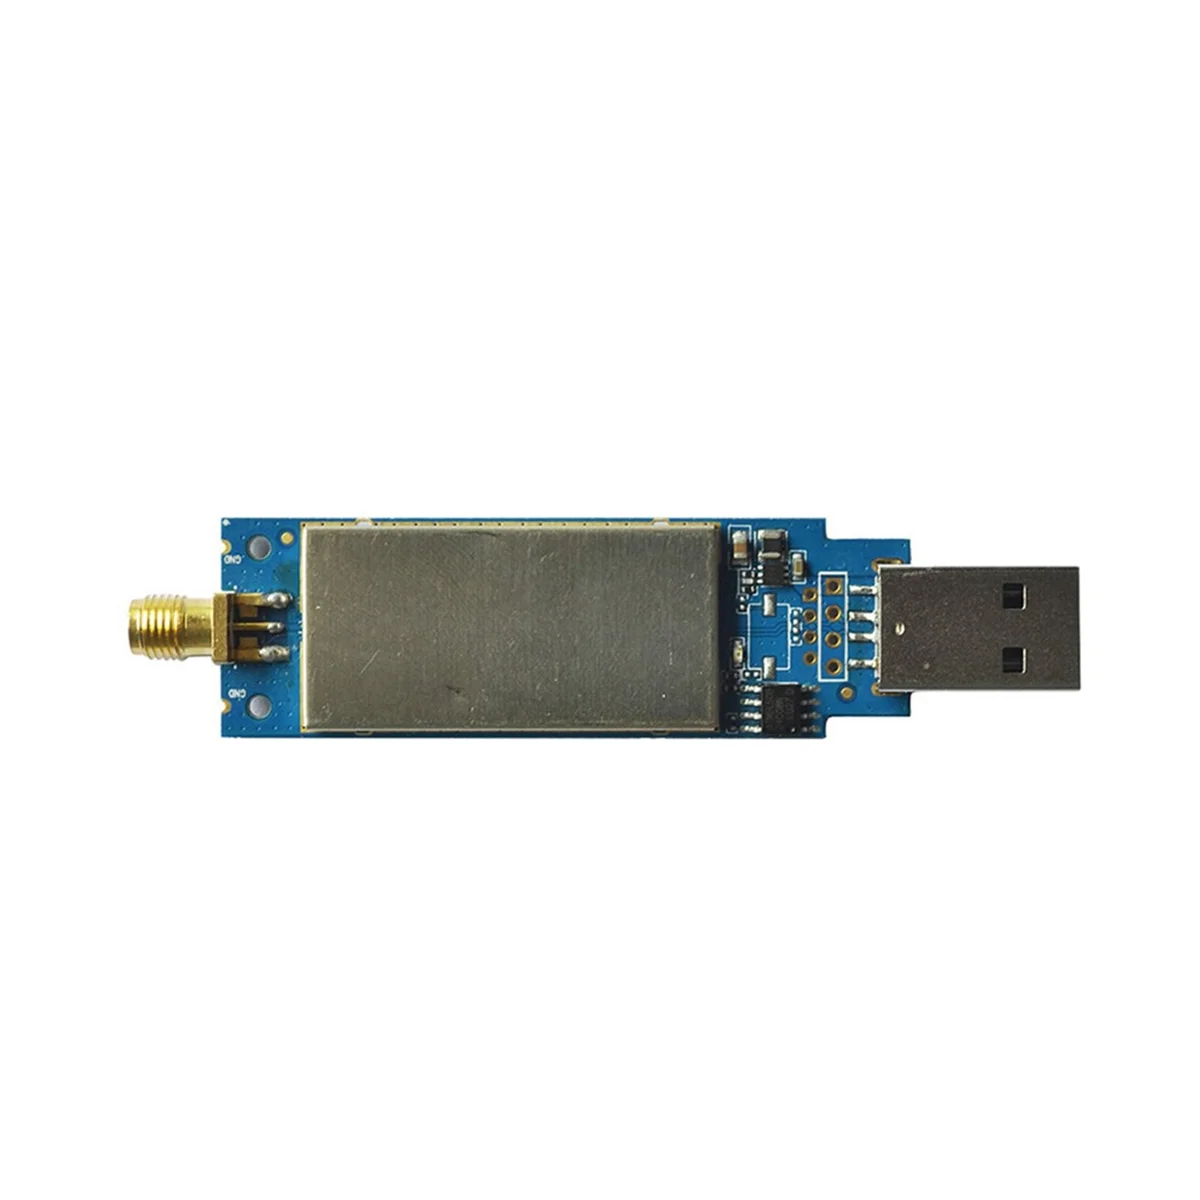 

Модуль беспроводной сетевой карты AR9271, 150 м, высокомощная USB беспроводная сетевая карта, приемник Wi-Fi на сверхдлинные расстояния